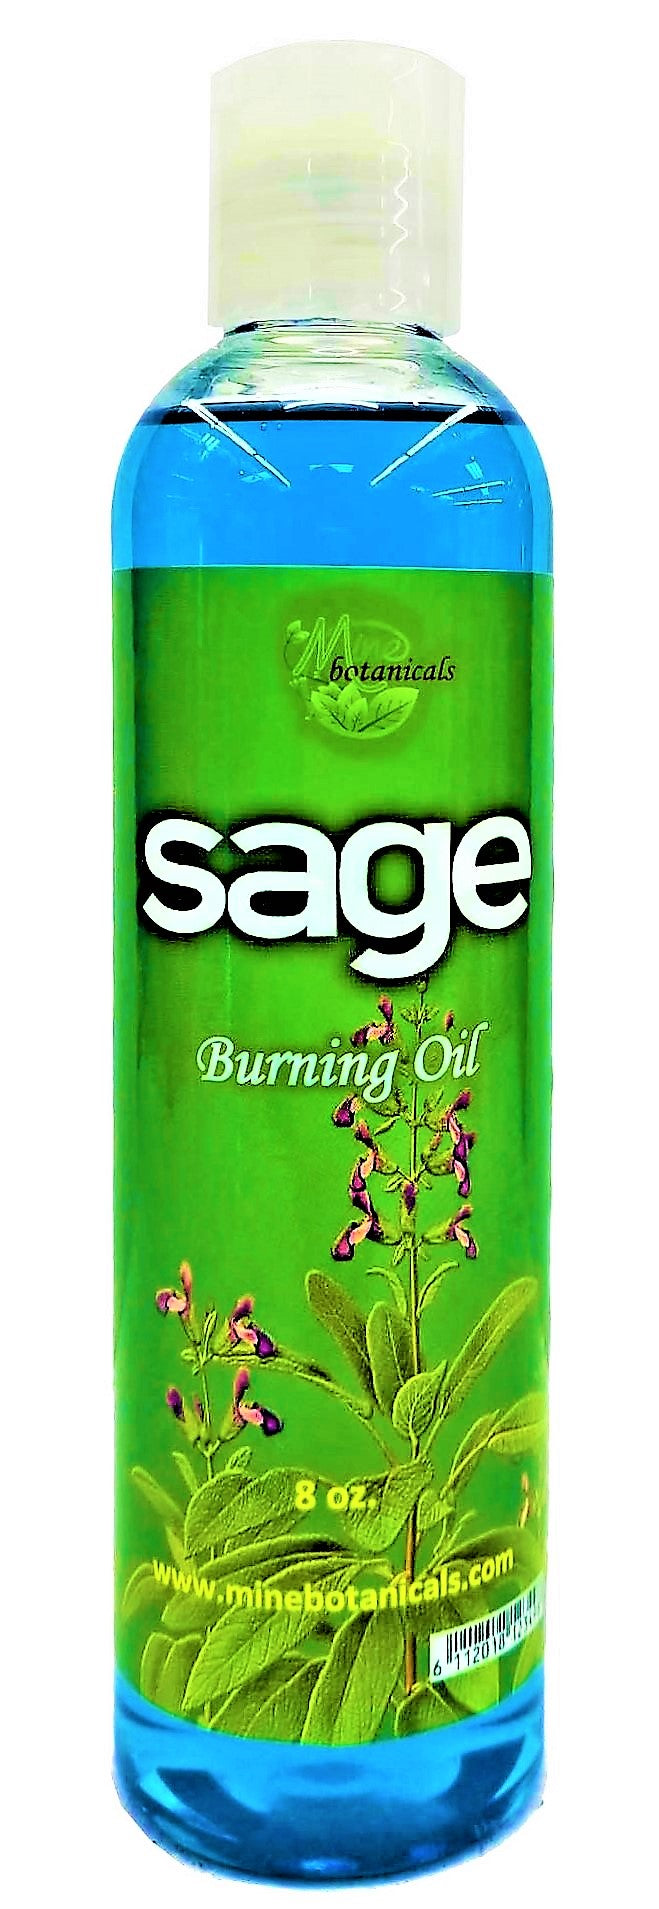 Sage Burning Oil